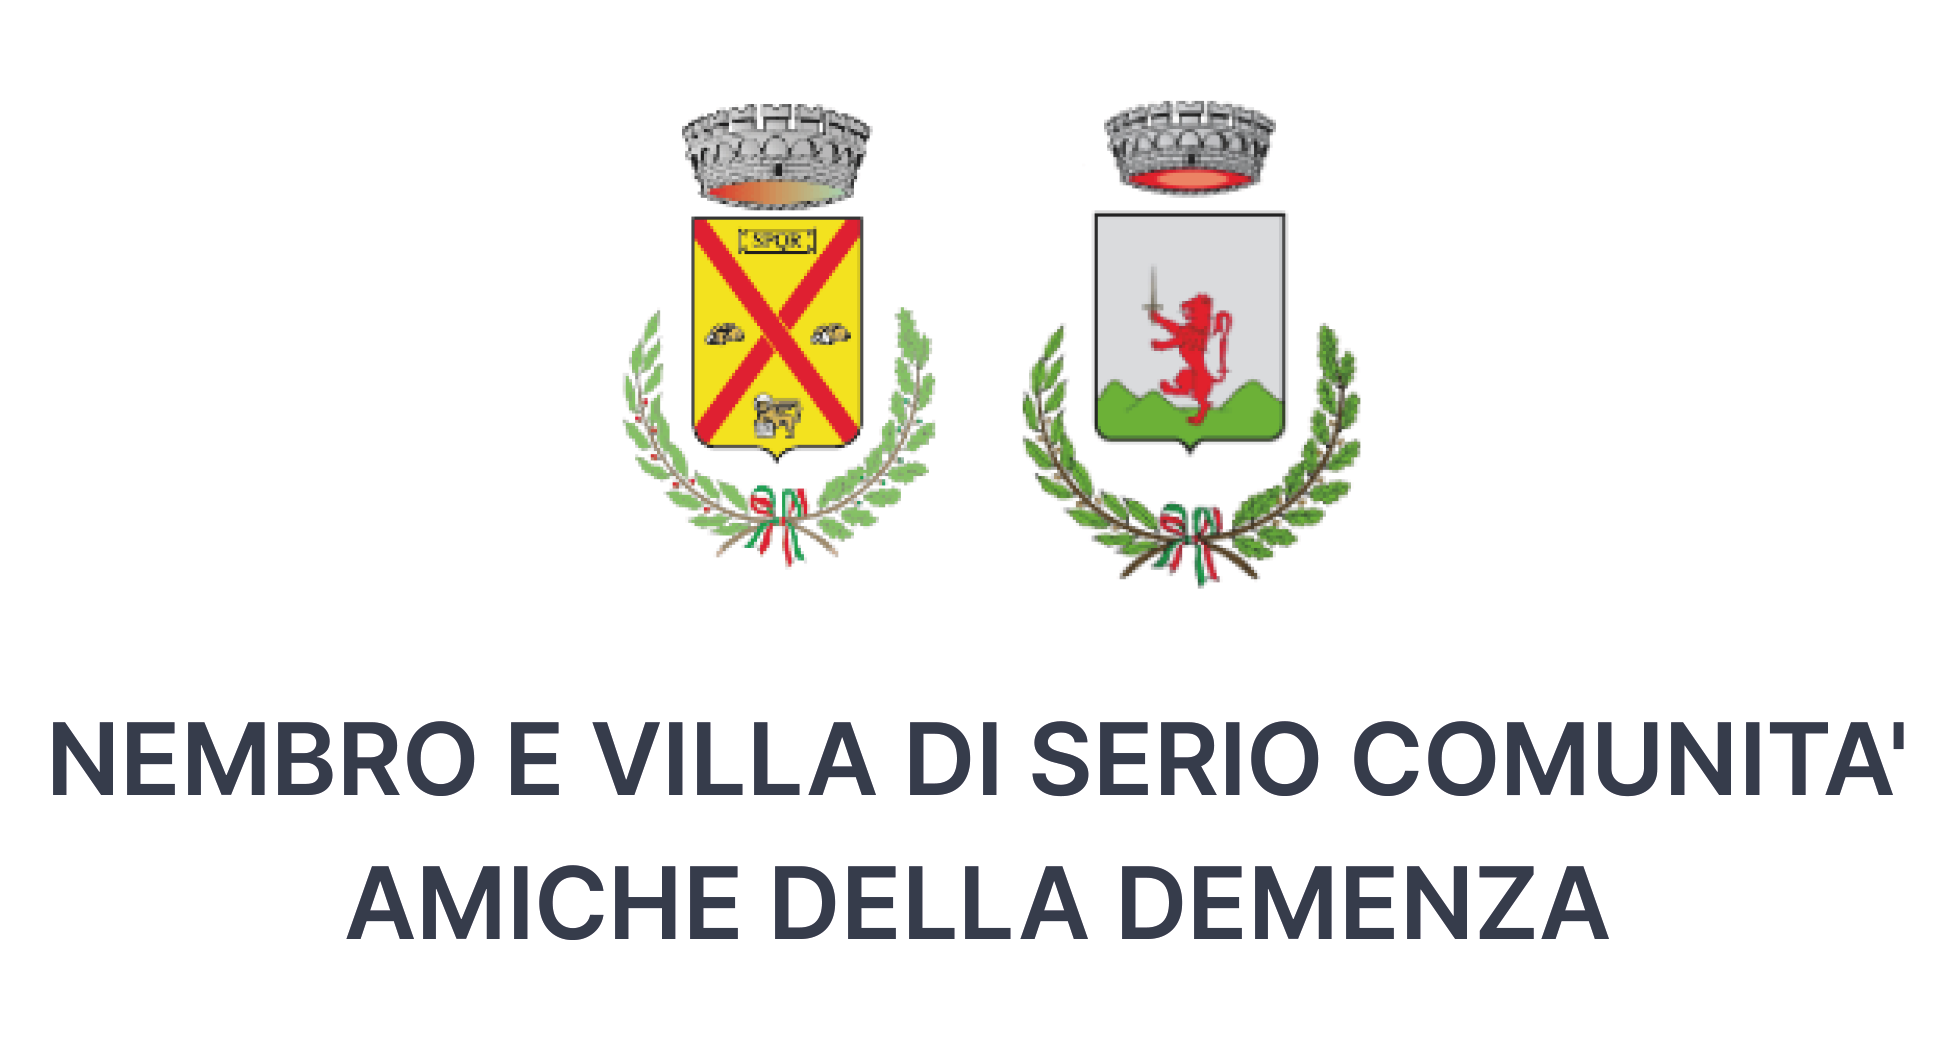 immagine Nembro e Villa di Serio, comunità amiche della demenza